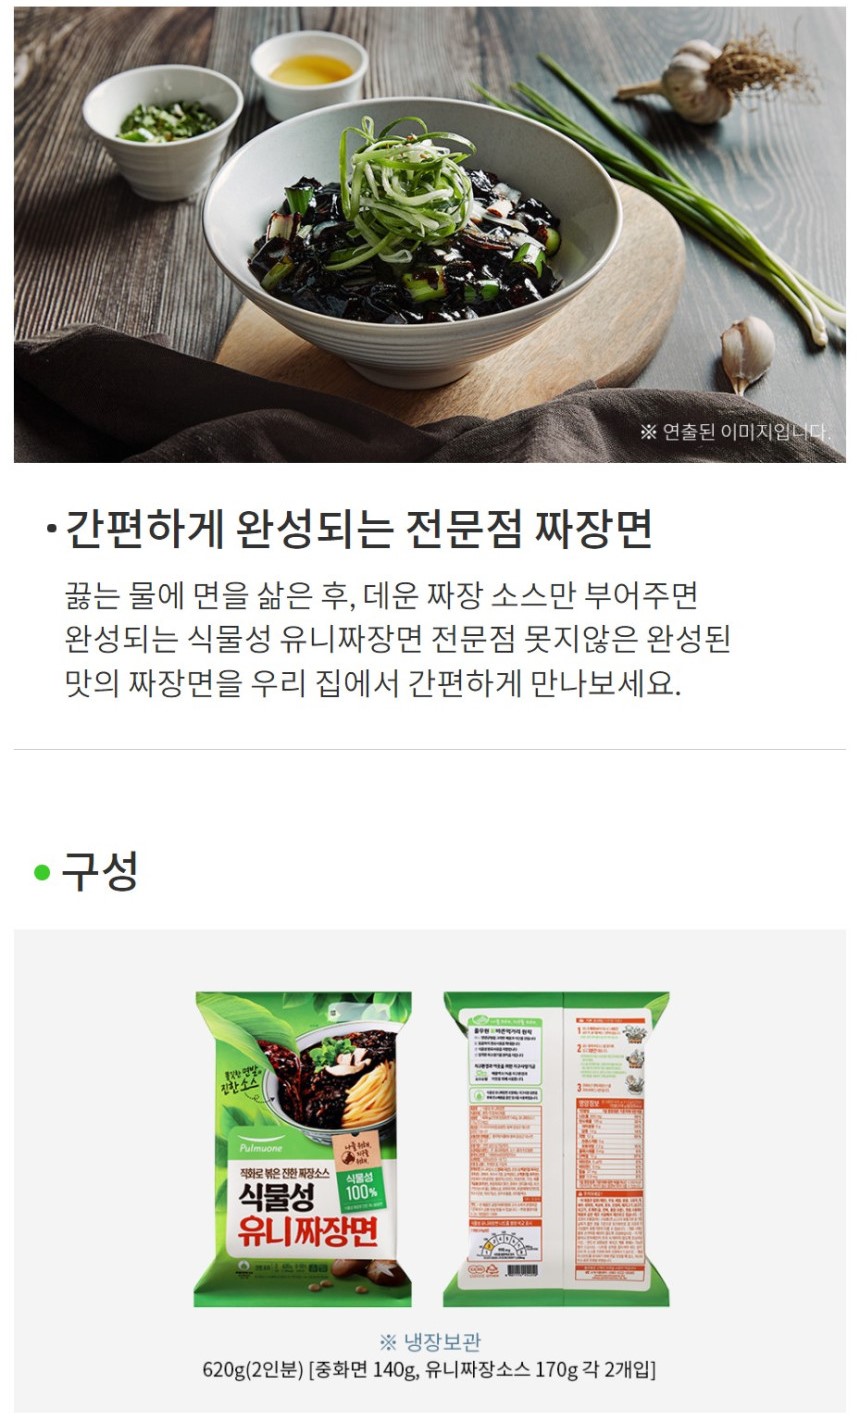 韓國食品-[Pulmuone] Vegetable Oil Jjajang Noodle 620g